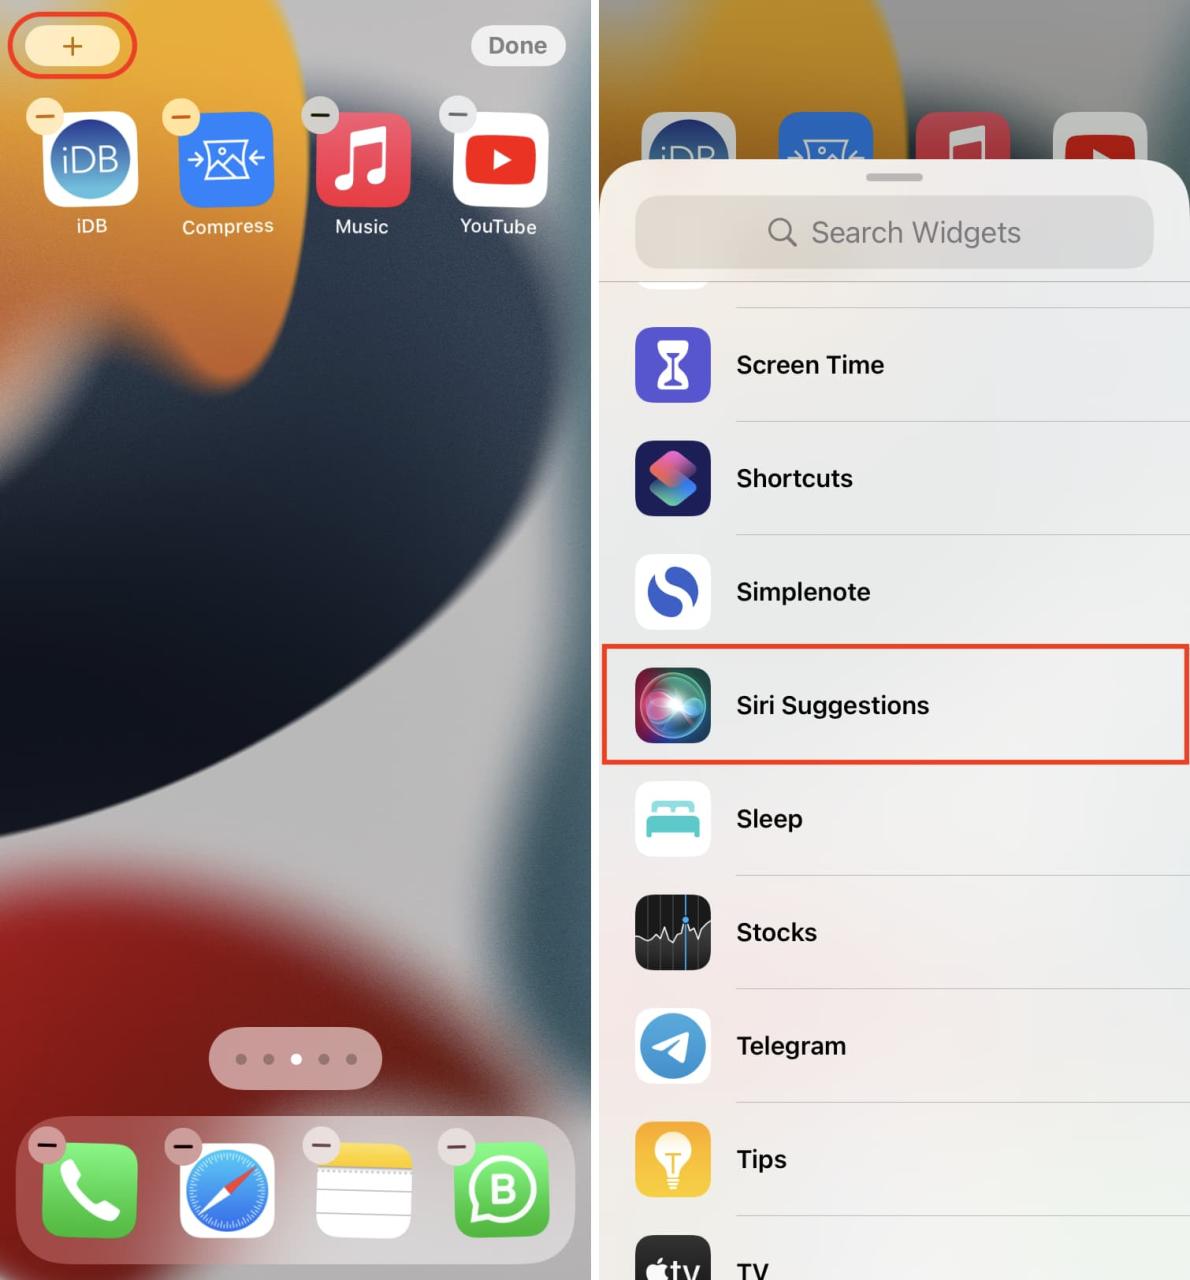 Agregue el widget Sugerencias de Siri a la pantalla de inicio del iPhone